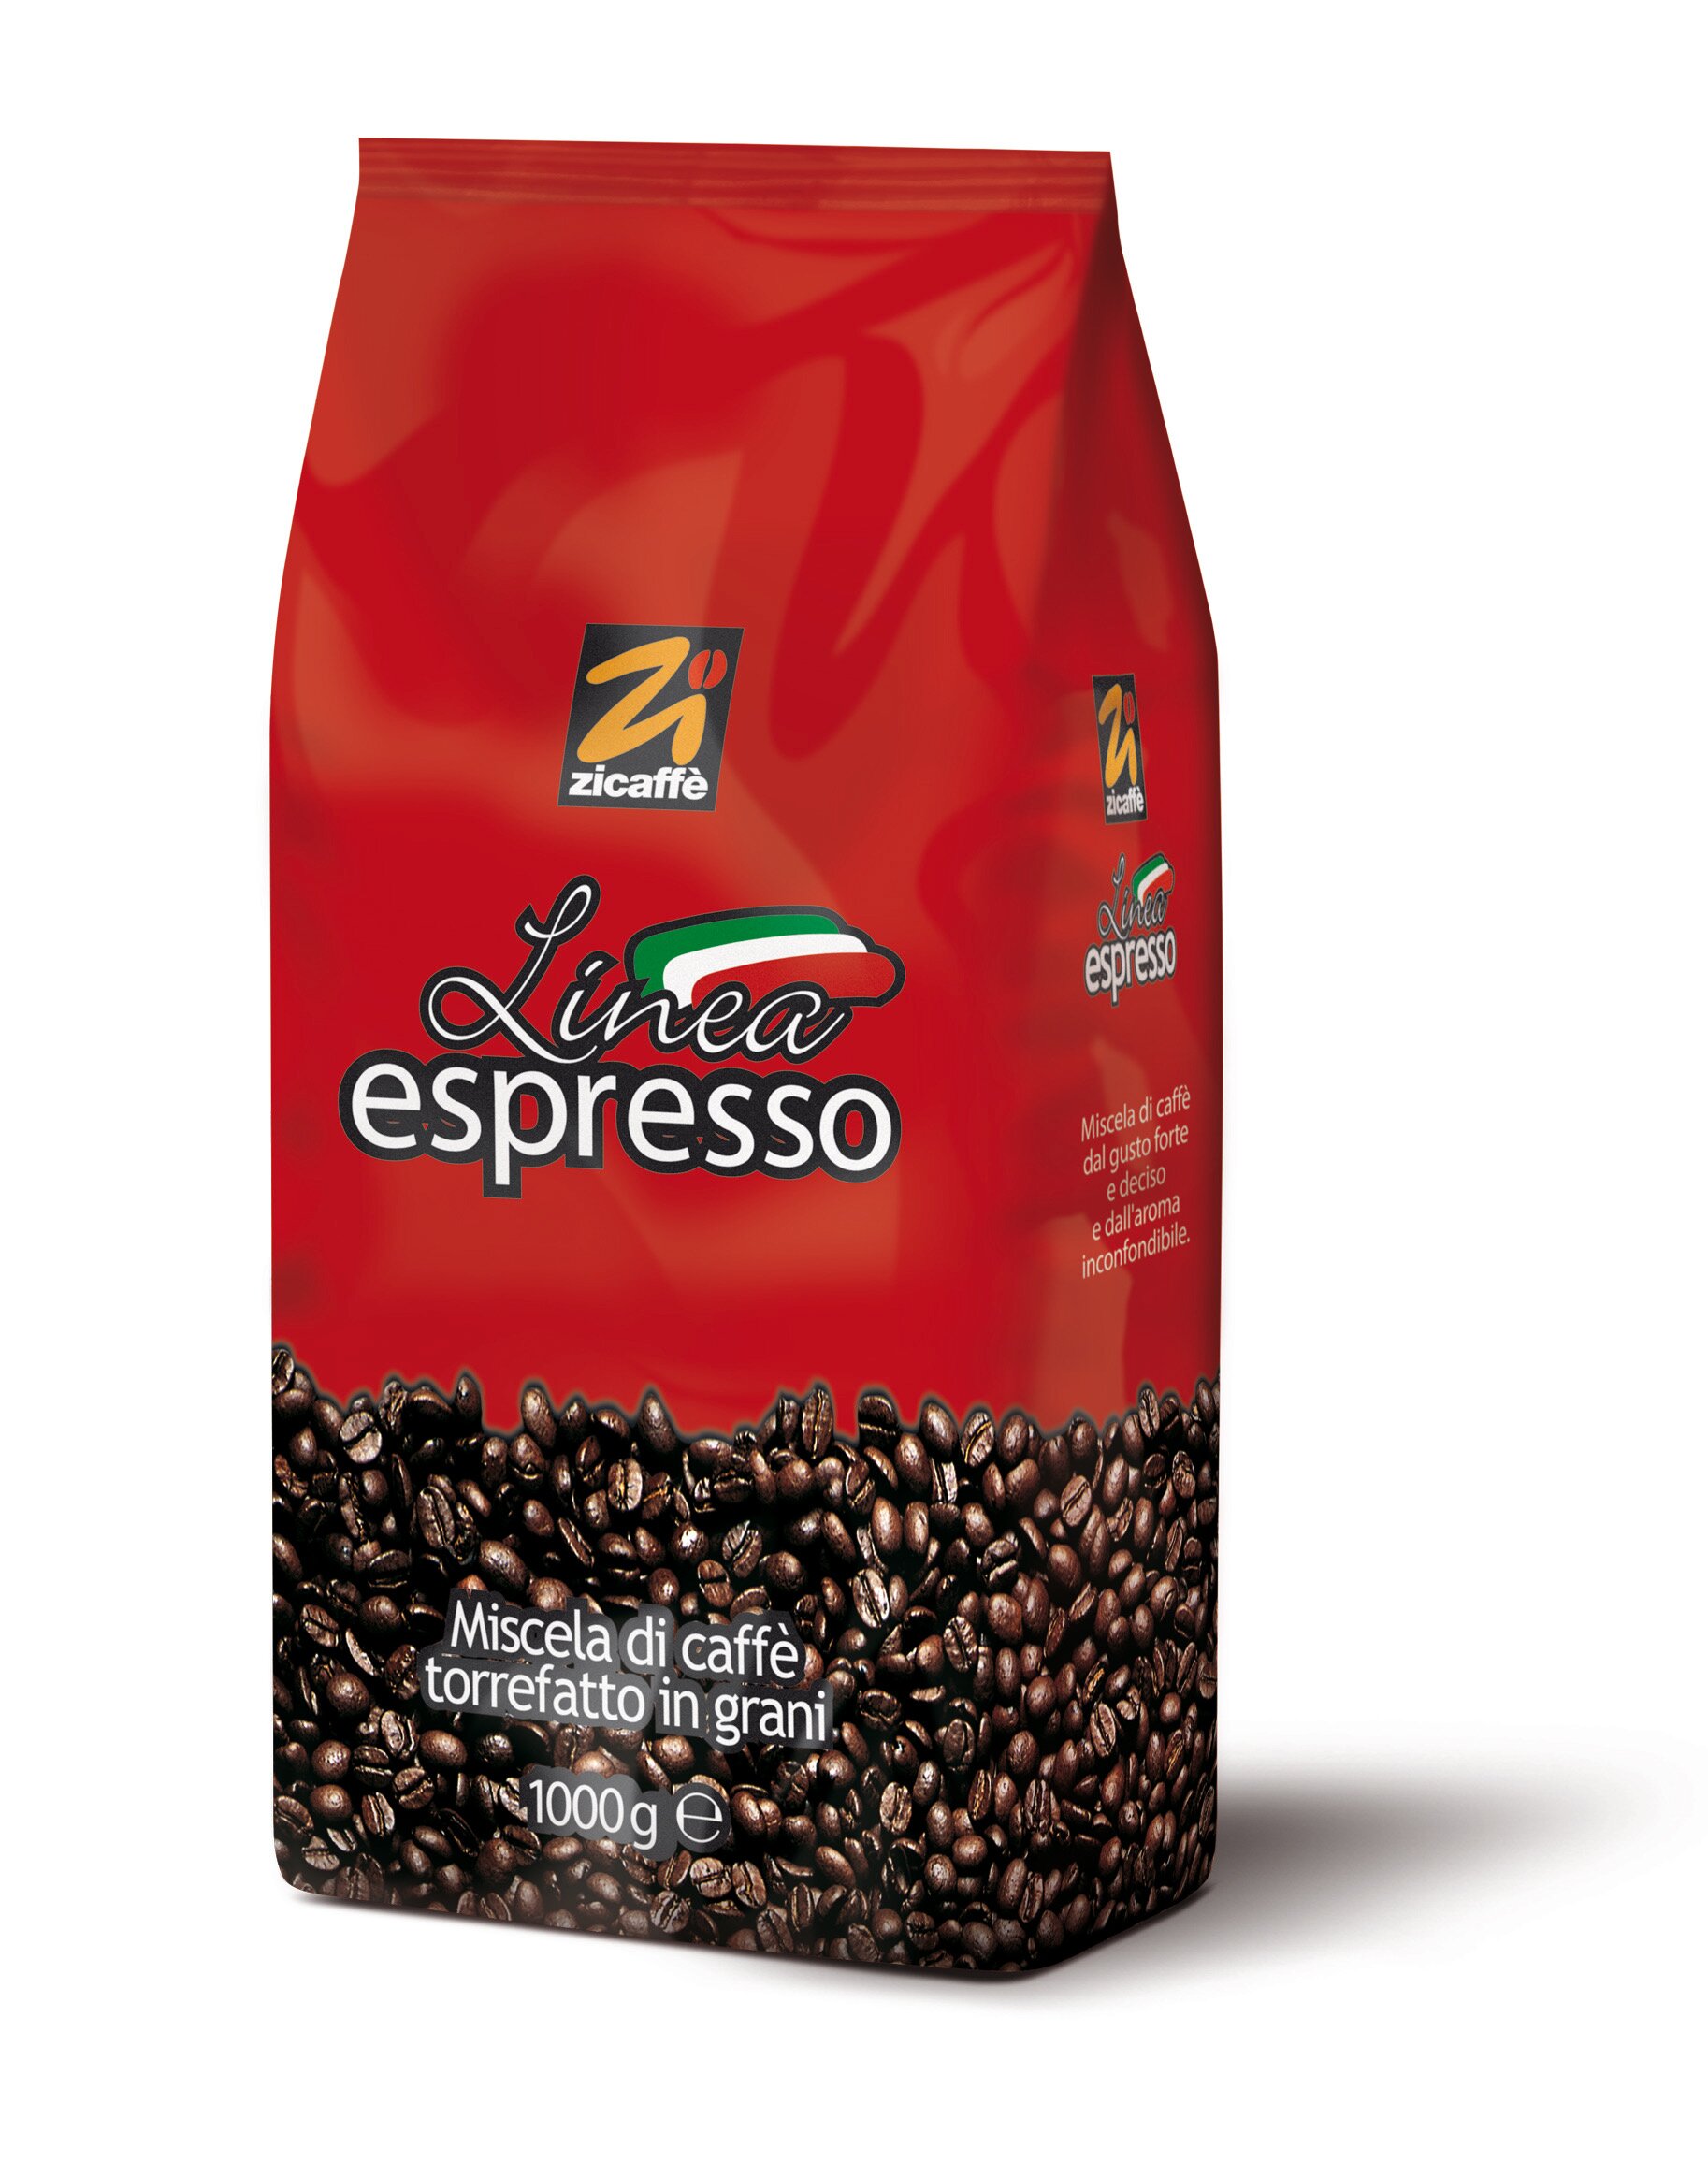 ZICAFFÈ LINEA ESPRESSO ab 13,60 EUR bei Crifalu Espresso online günstig kaufen